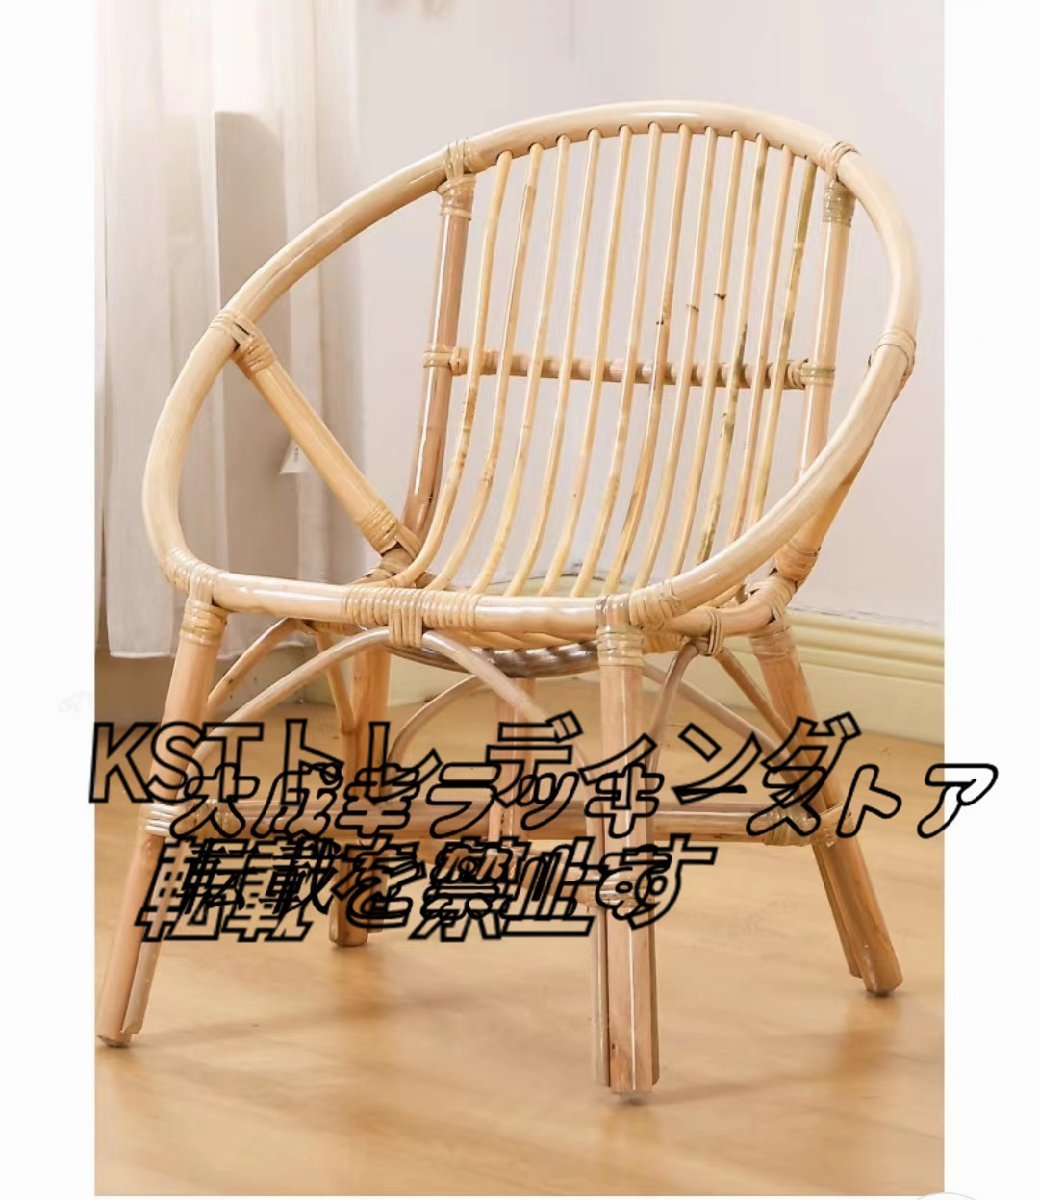 【新入荷】 背もたれチェア 手作り籐編椅子 アームチェア ラタン家具 ラタンチェア ラタン椅子 籐製イス 籐椅子 天然素材 おしゃれ_画像5